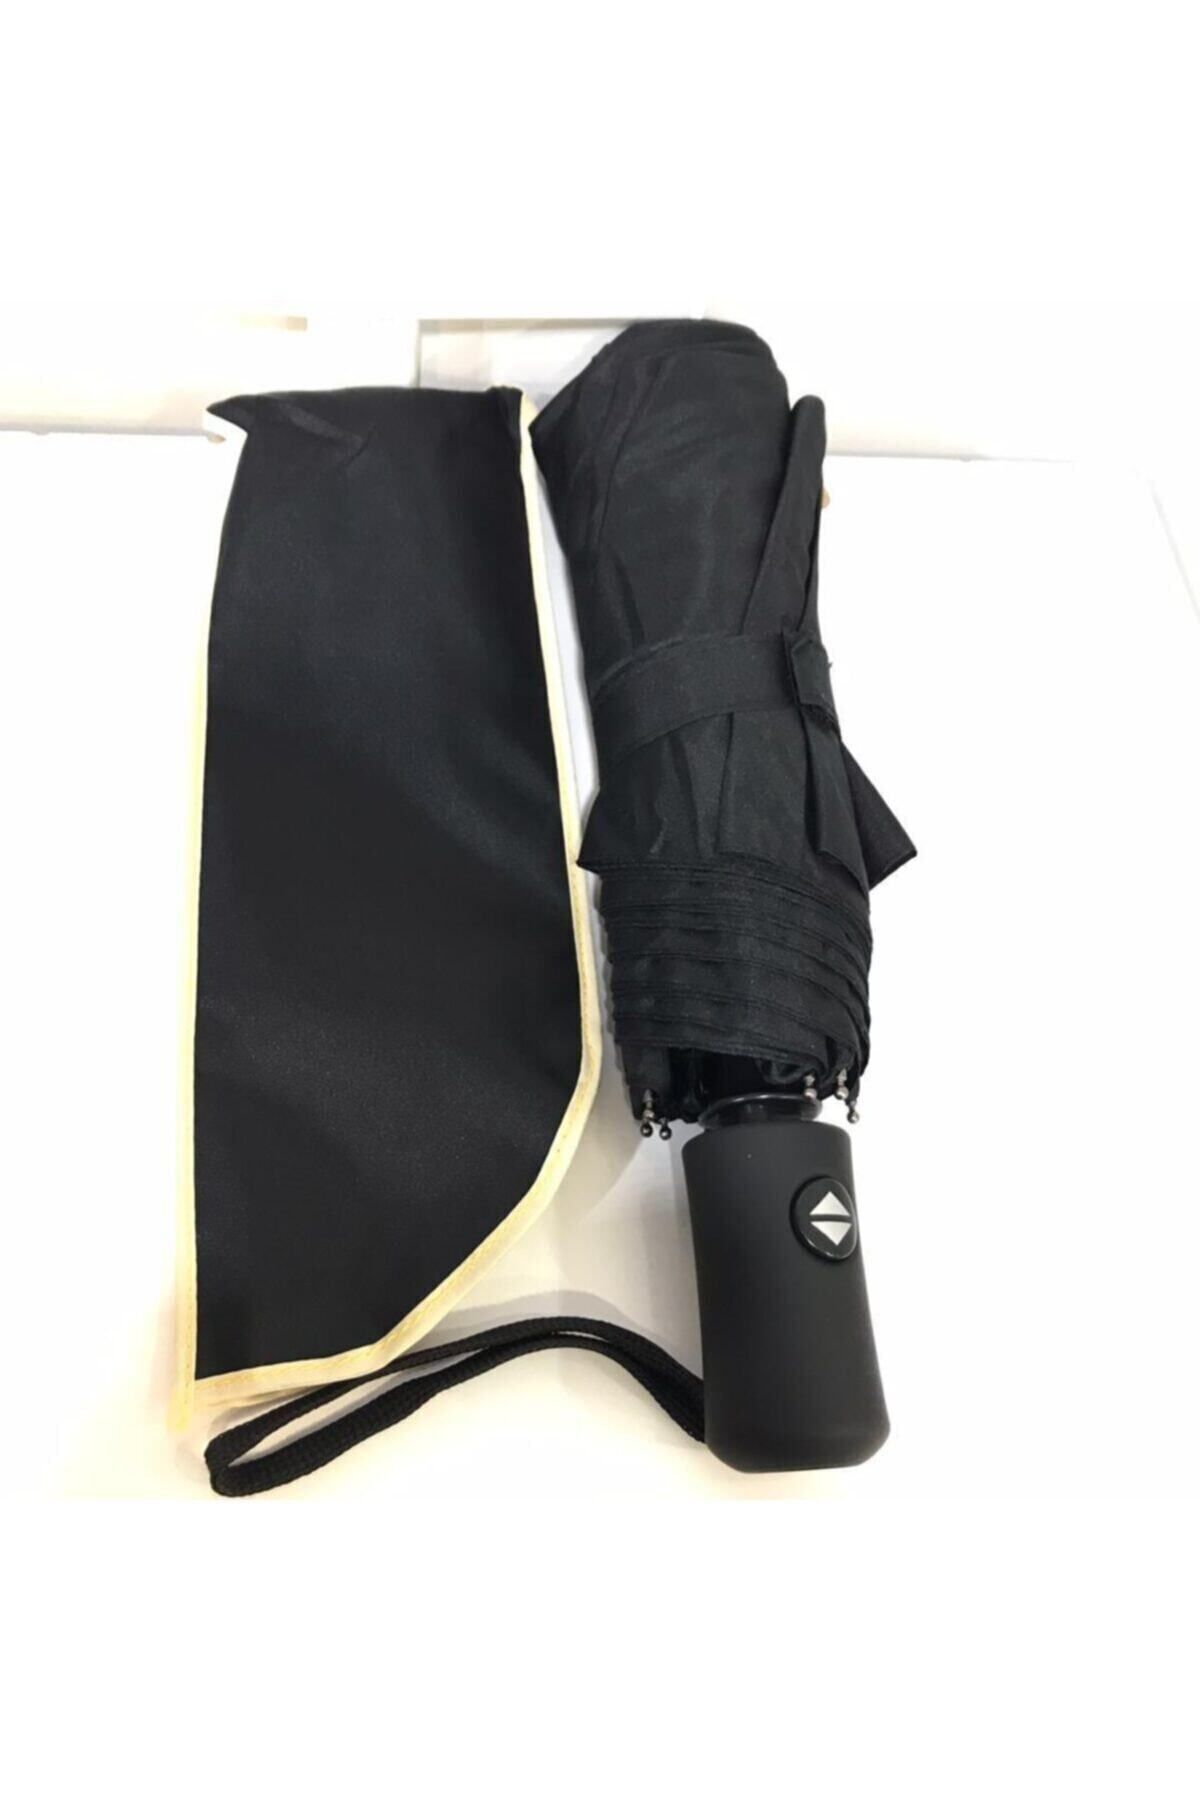 Umbrella Şemsiye Siyah Ful Otomatik Rüzgarda Esneyebilen Mekanizma